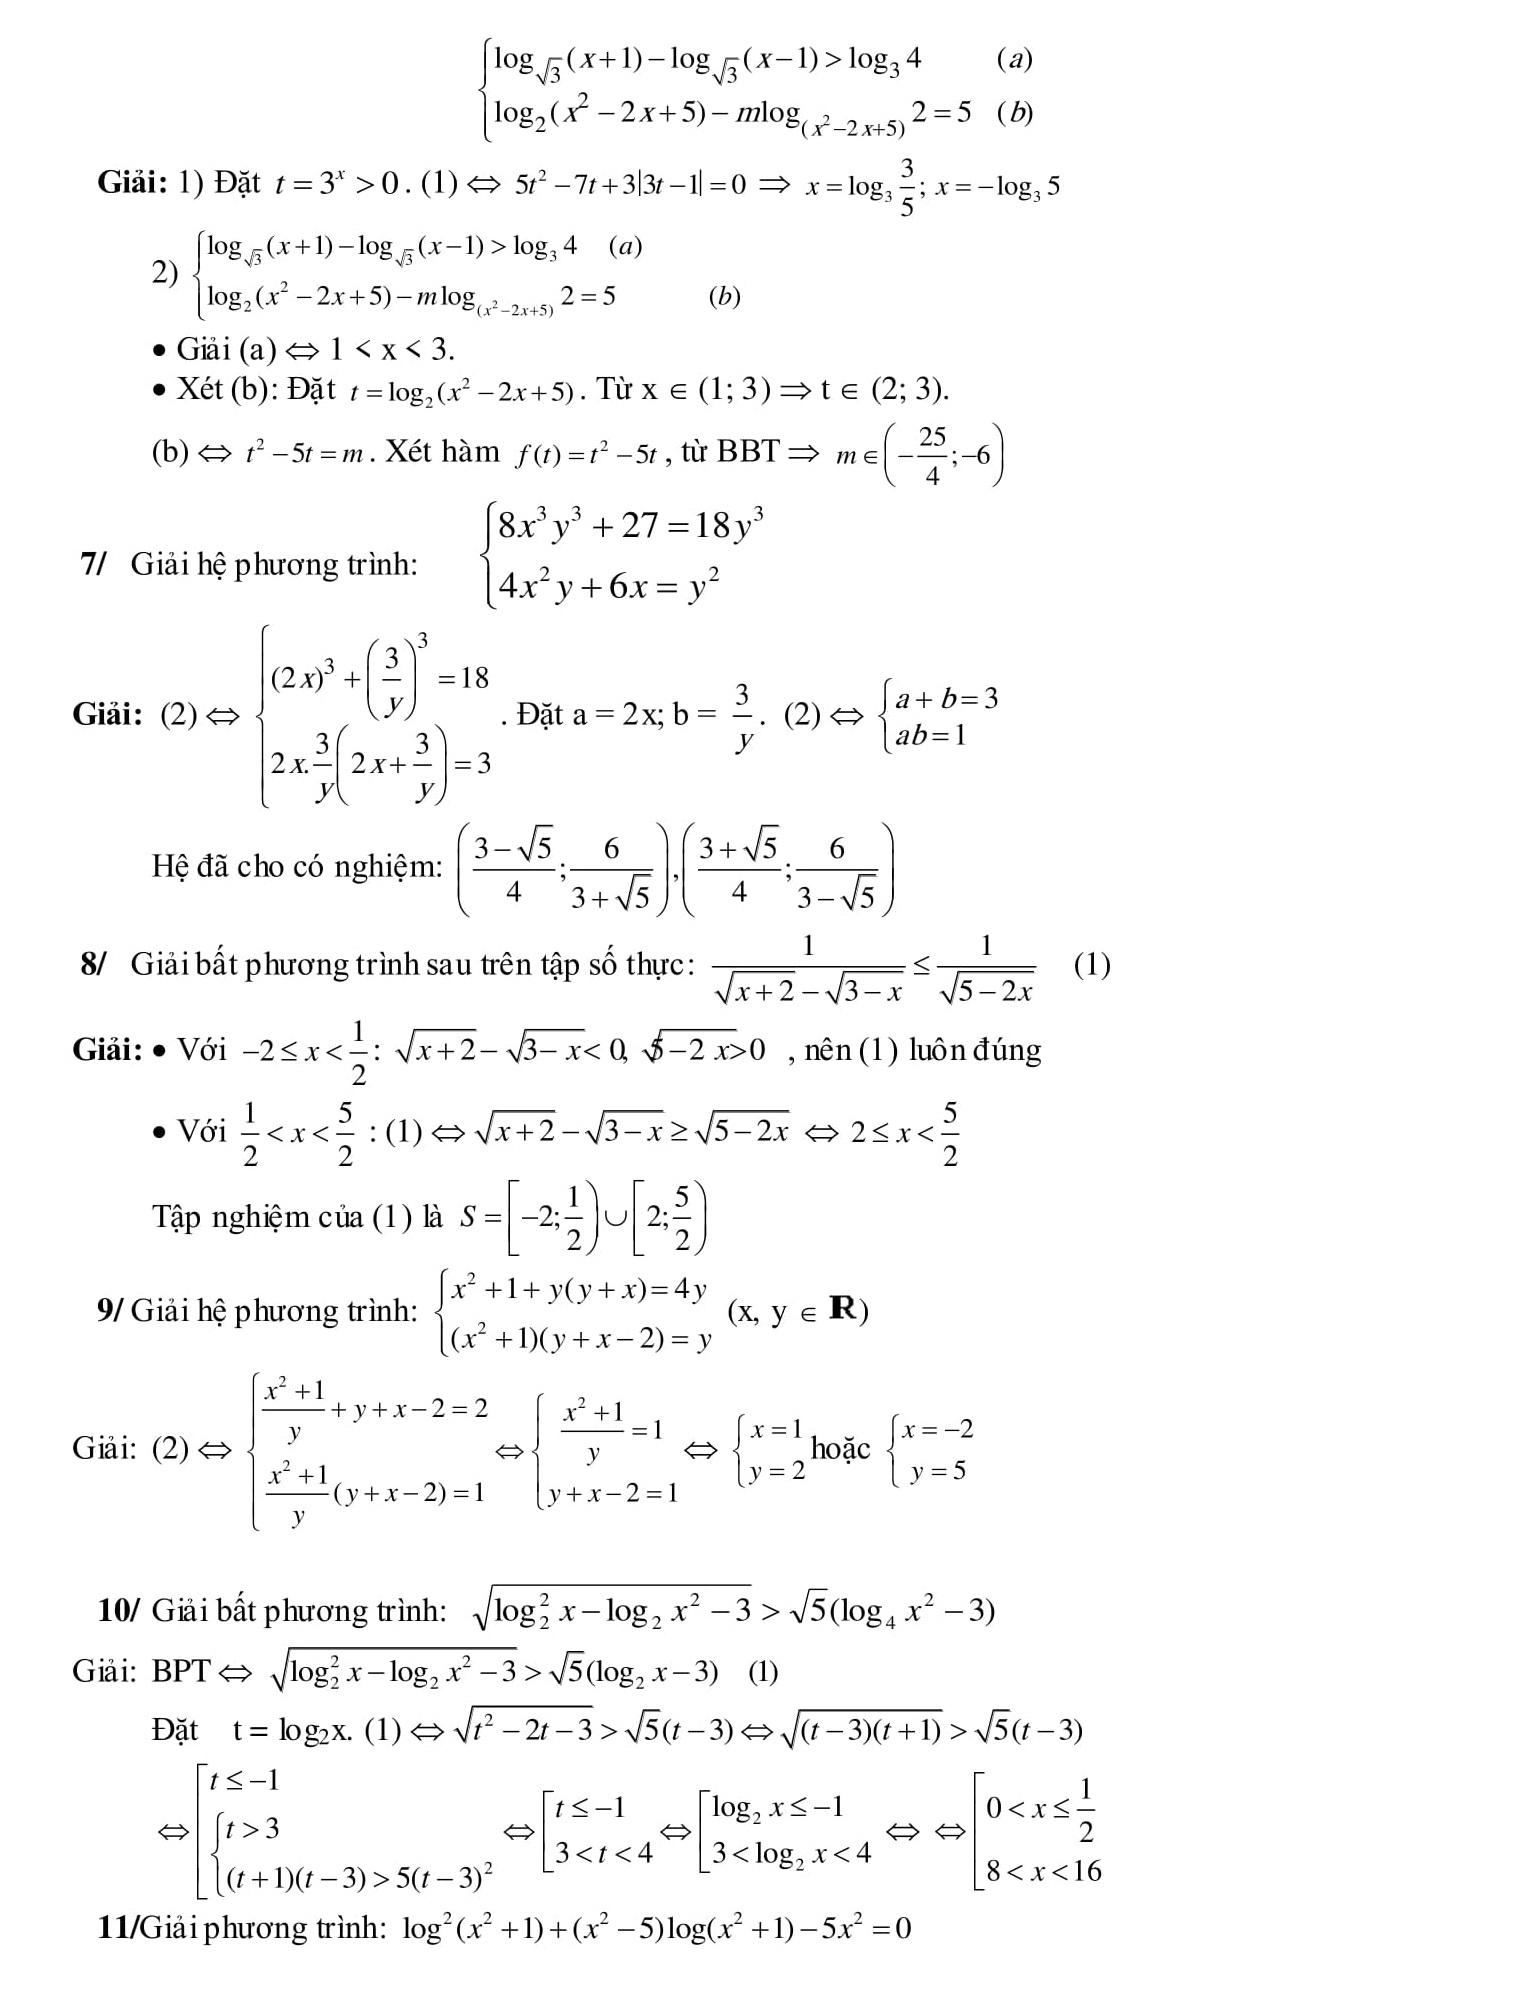 260 Bài tập Hệ phương trình Toán 9 trong đề thi